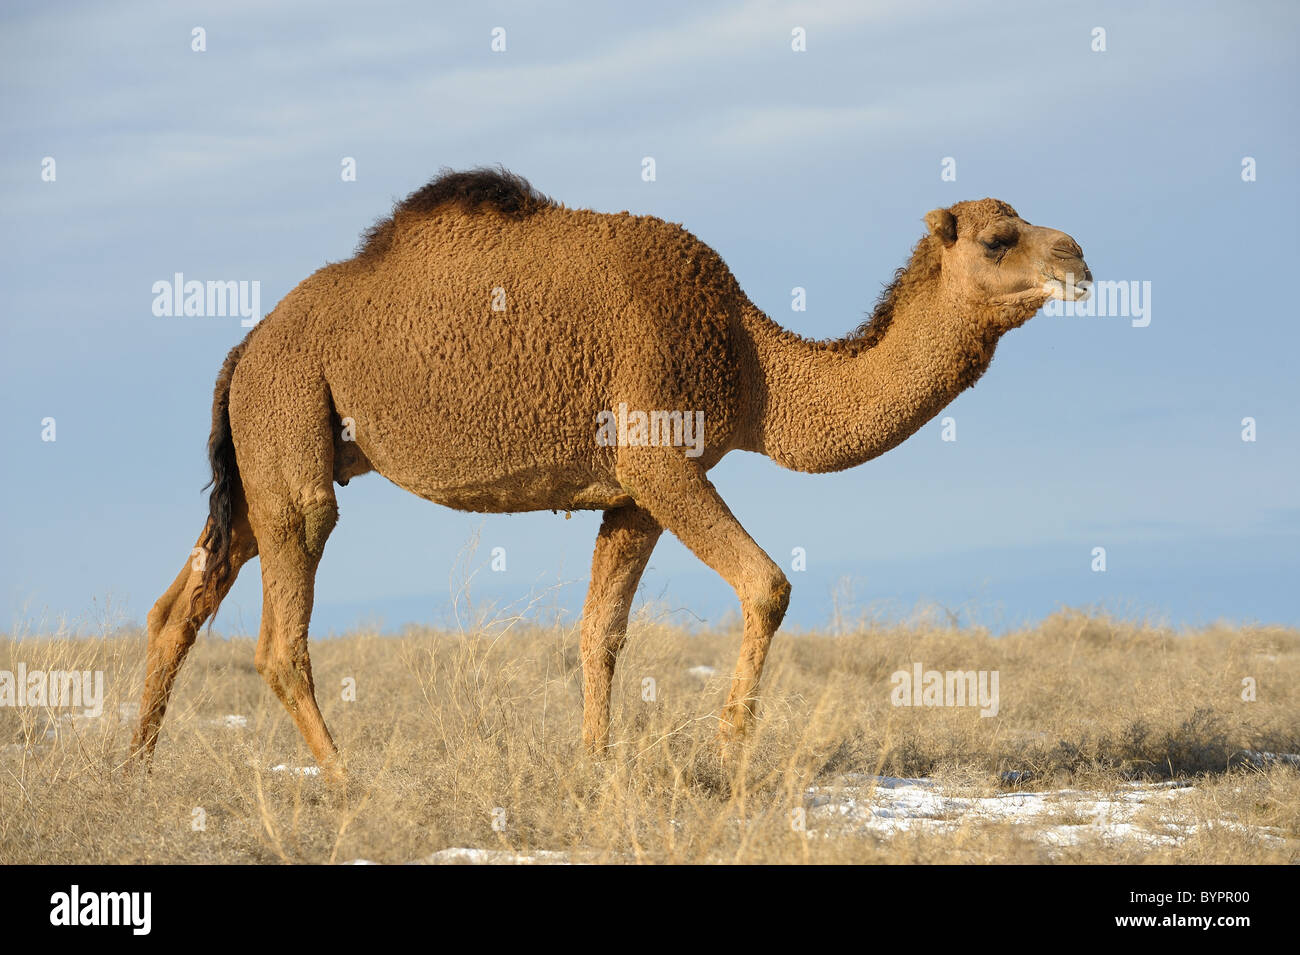 Le Dromader camel en steppe Asiatique Banque D'Images